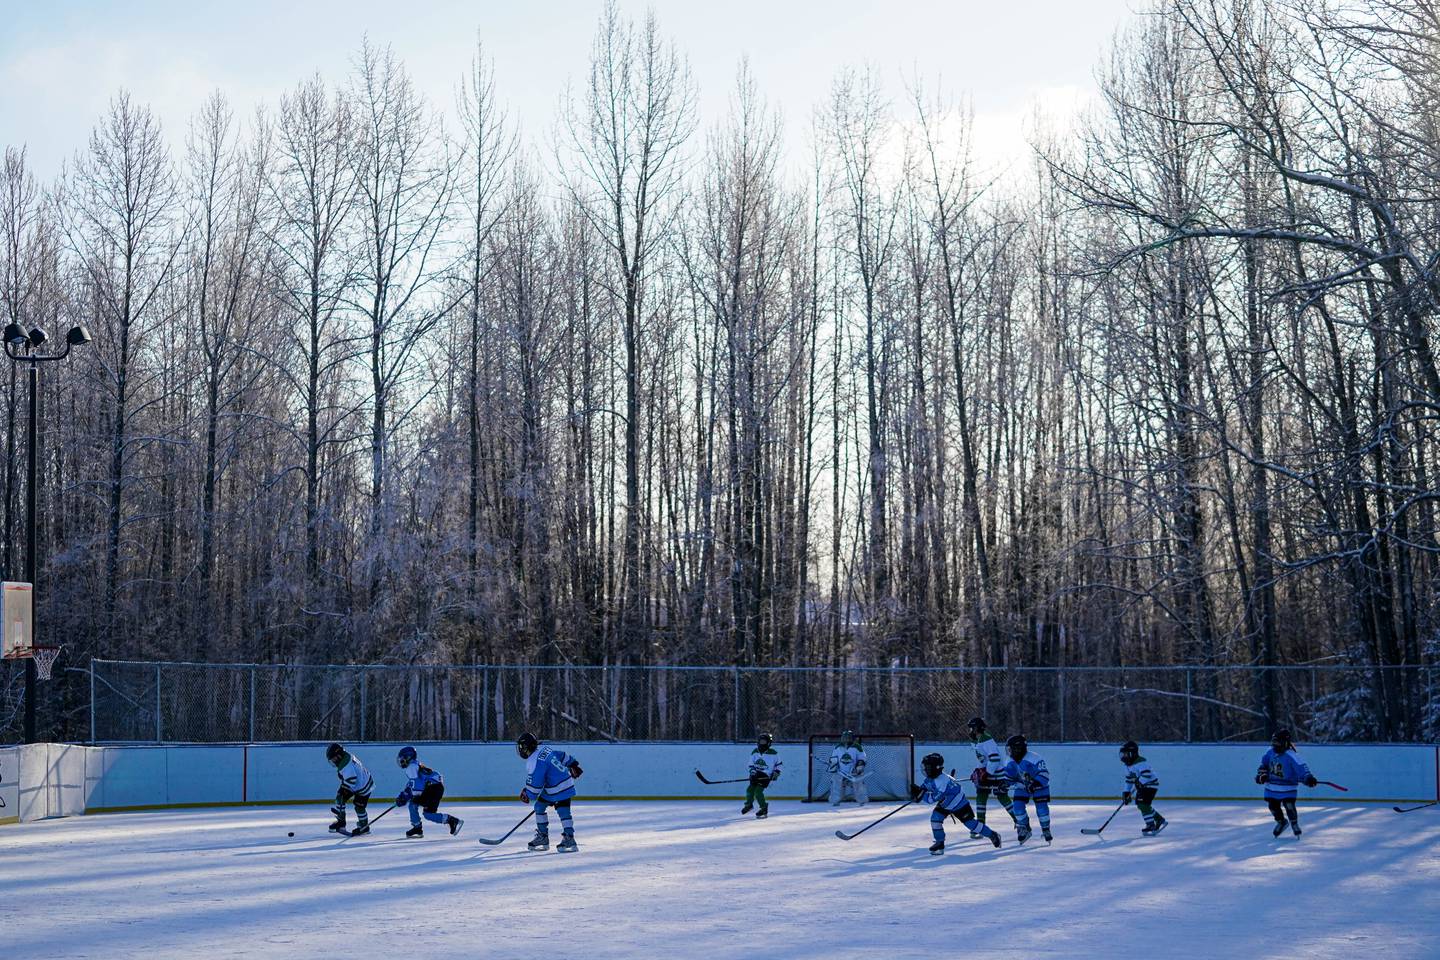 Tikishla Park, hockey, hockey rink, outdoor hockey